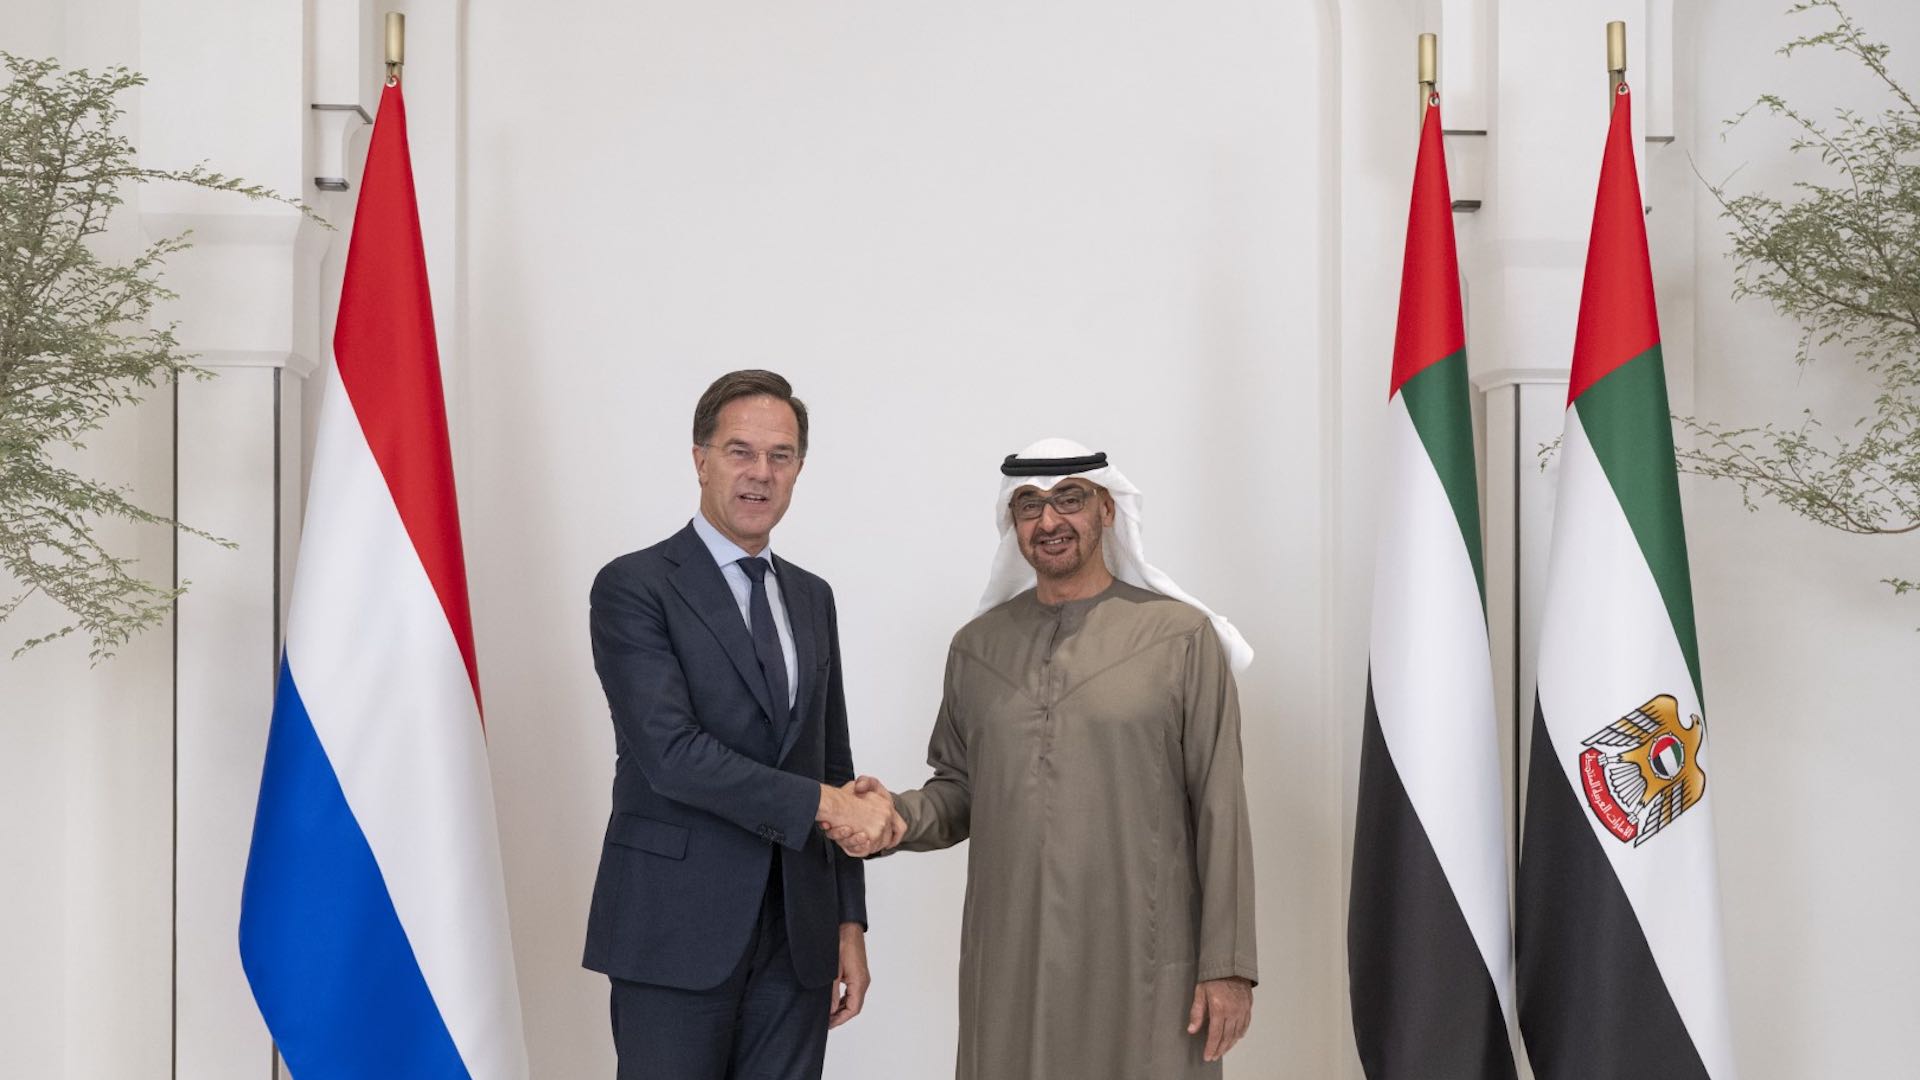 متحدہ عرب امارات اور نیدرلینڈز کے رہنما باہمی تعاون کو تقویت دینے کے لیے ملاقات کر رہے ہیں۔